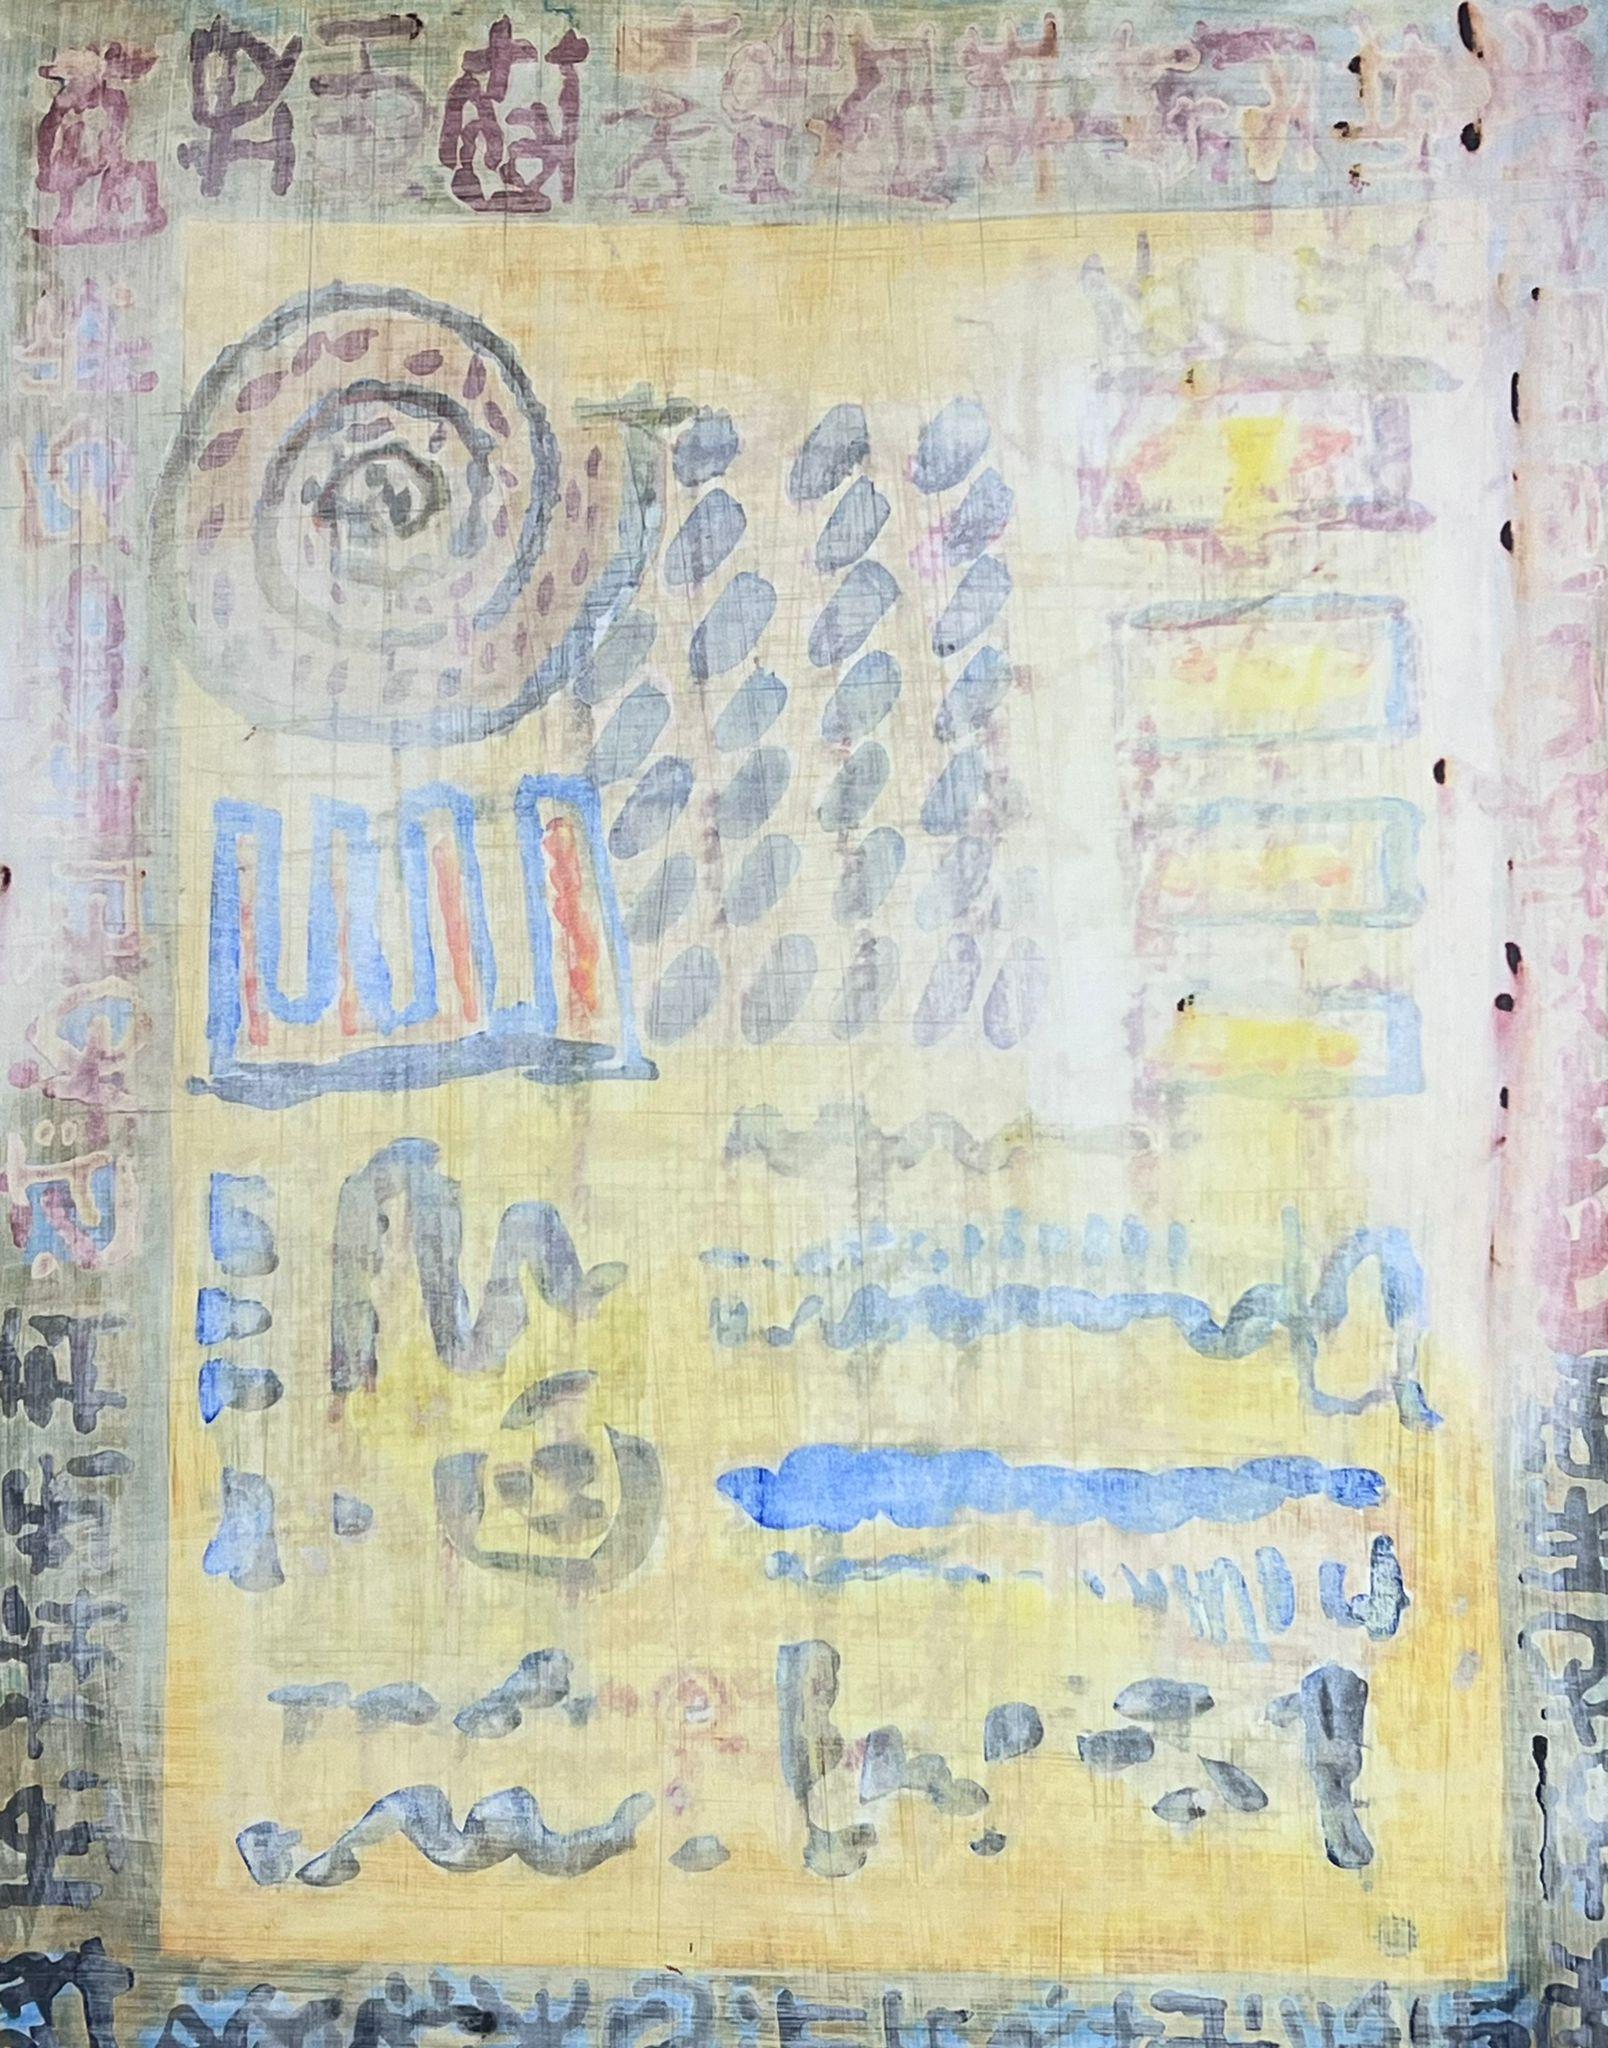 Abstrakt-expressionistische Komposition 
von Jacques COULAIS (1955-2011) Aquarell auf dickem Karton
ungerahmt: 25,5 x 19,5 Zoll
Zustand: ausgezeichnet
Provenienz: Alle Gemälde, die wir von diesem Künstler zum Verkauf anbieten, stammen aus dem Studio